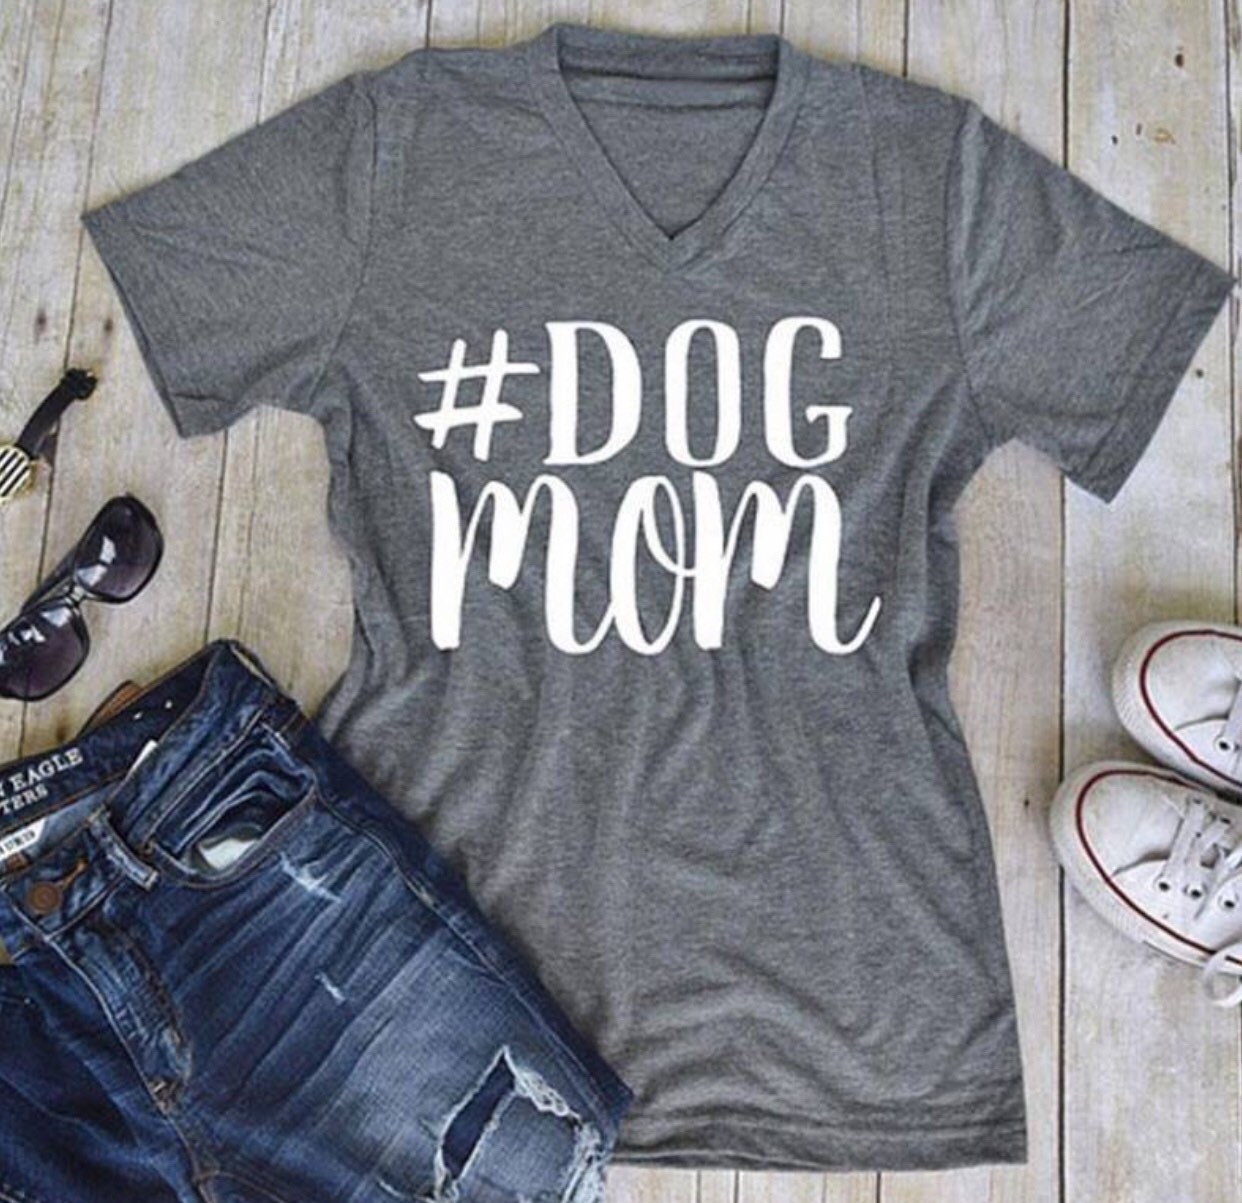 Dog mom t shirt